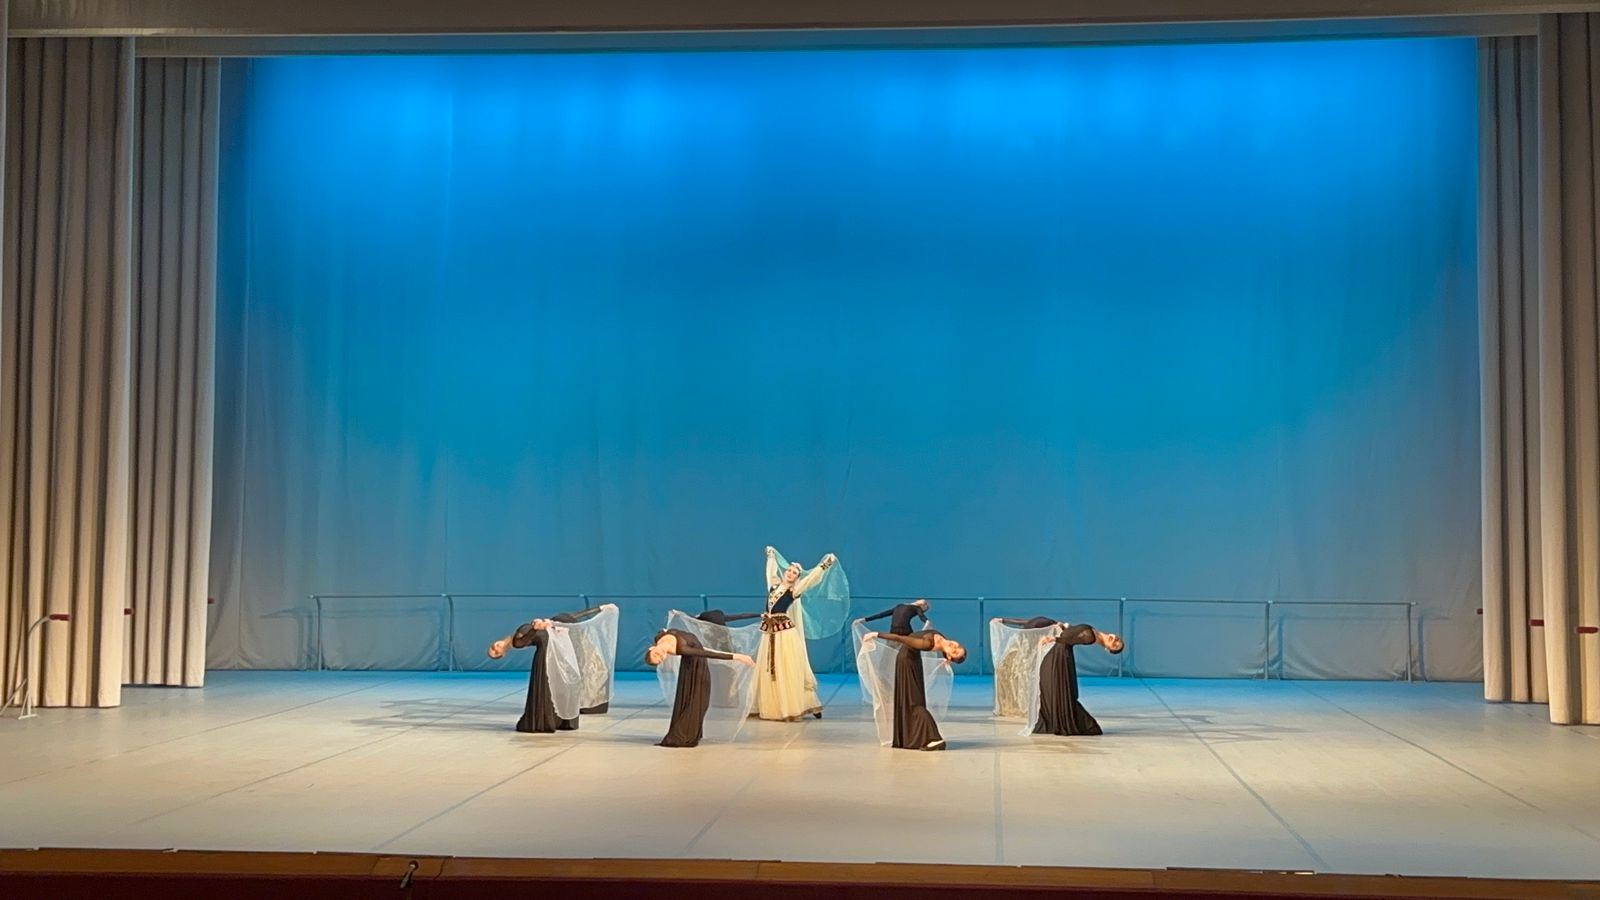 Впервые на госэкзамене в Москве! Азербайджанские танцы в исполнении представителей США, Южной Кореи, Италии и Японии (ВИДЕО, ФОТО)